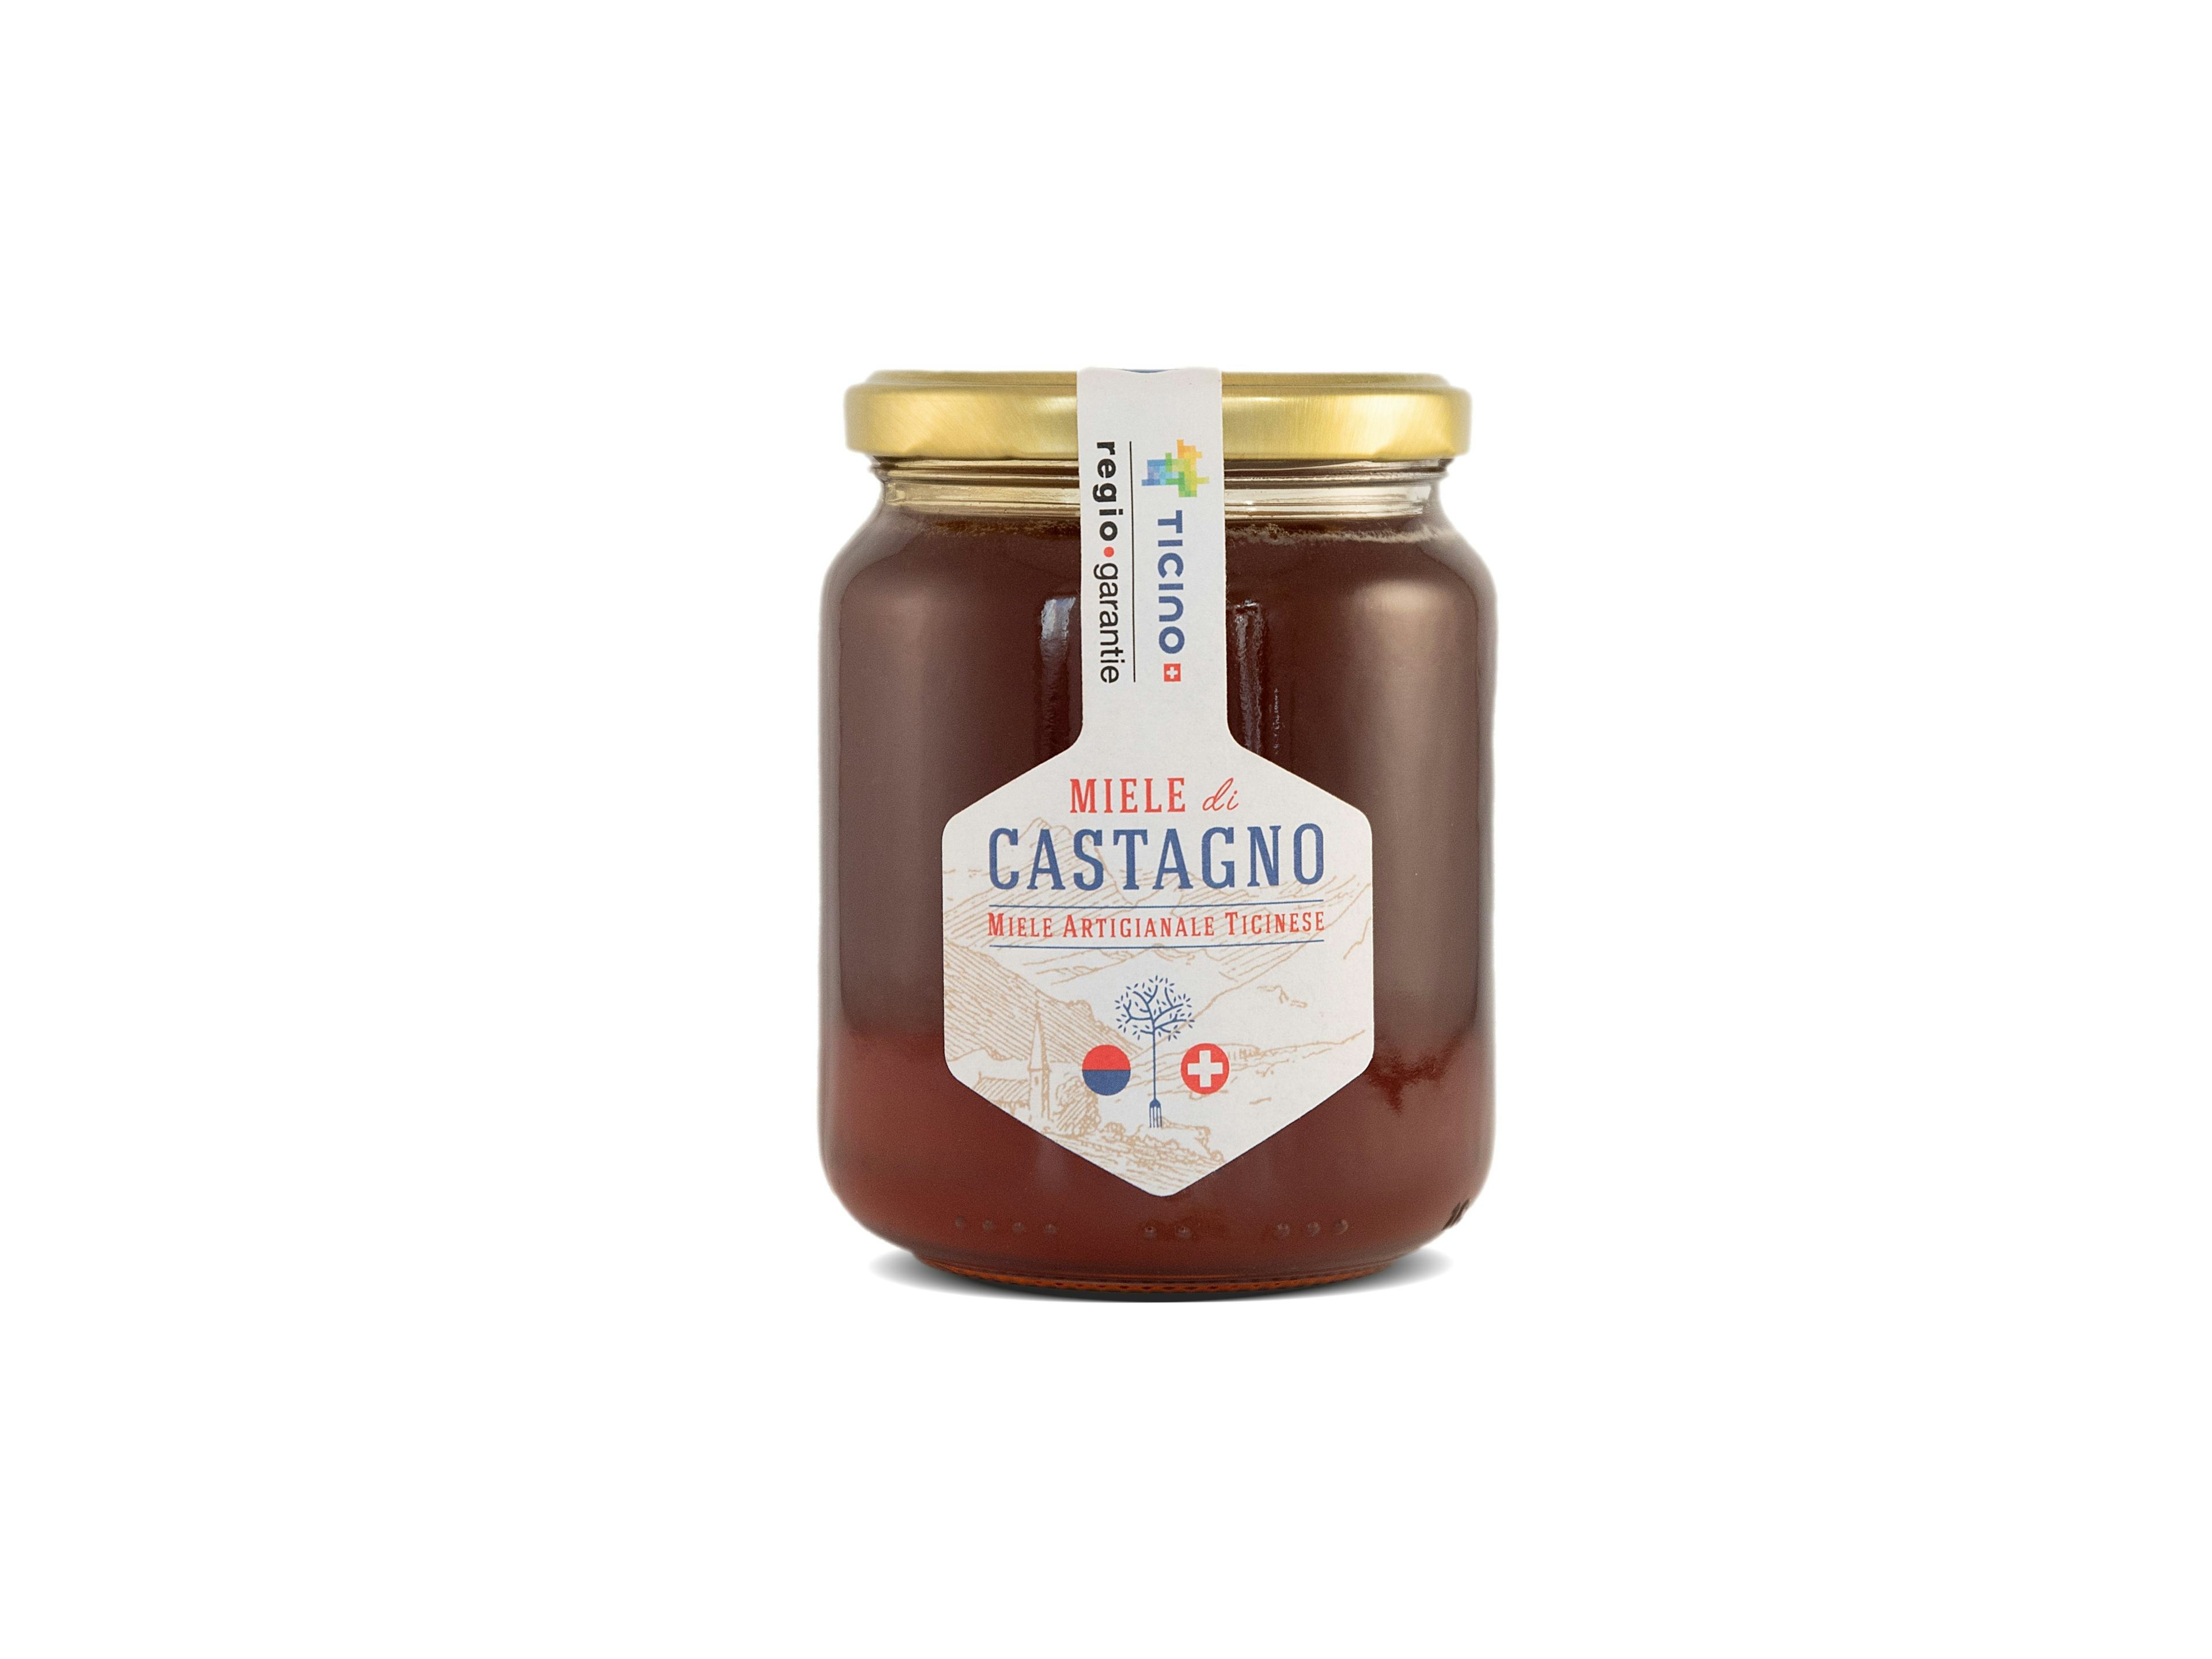 Miele di Castagno da 500g, produit artisanal en vente directe en Suisse